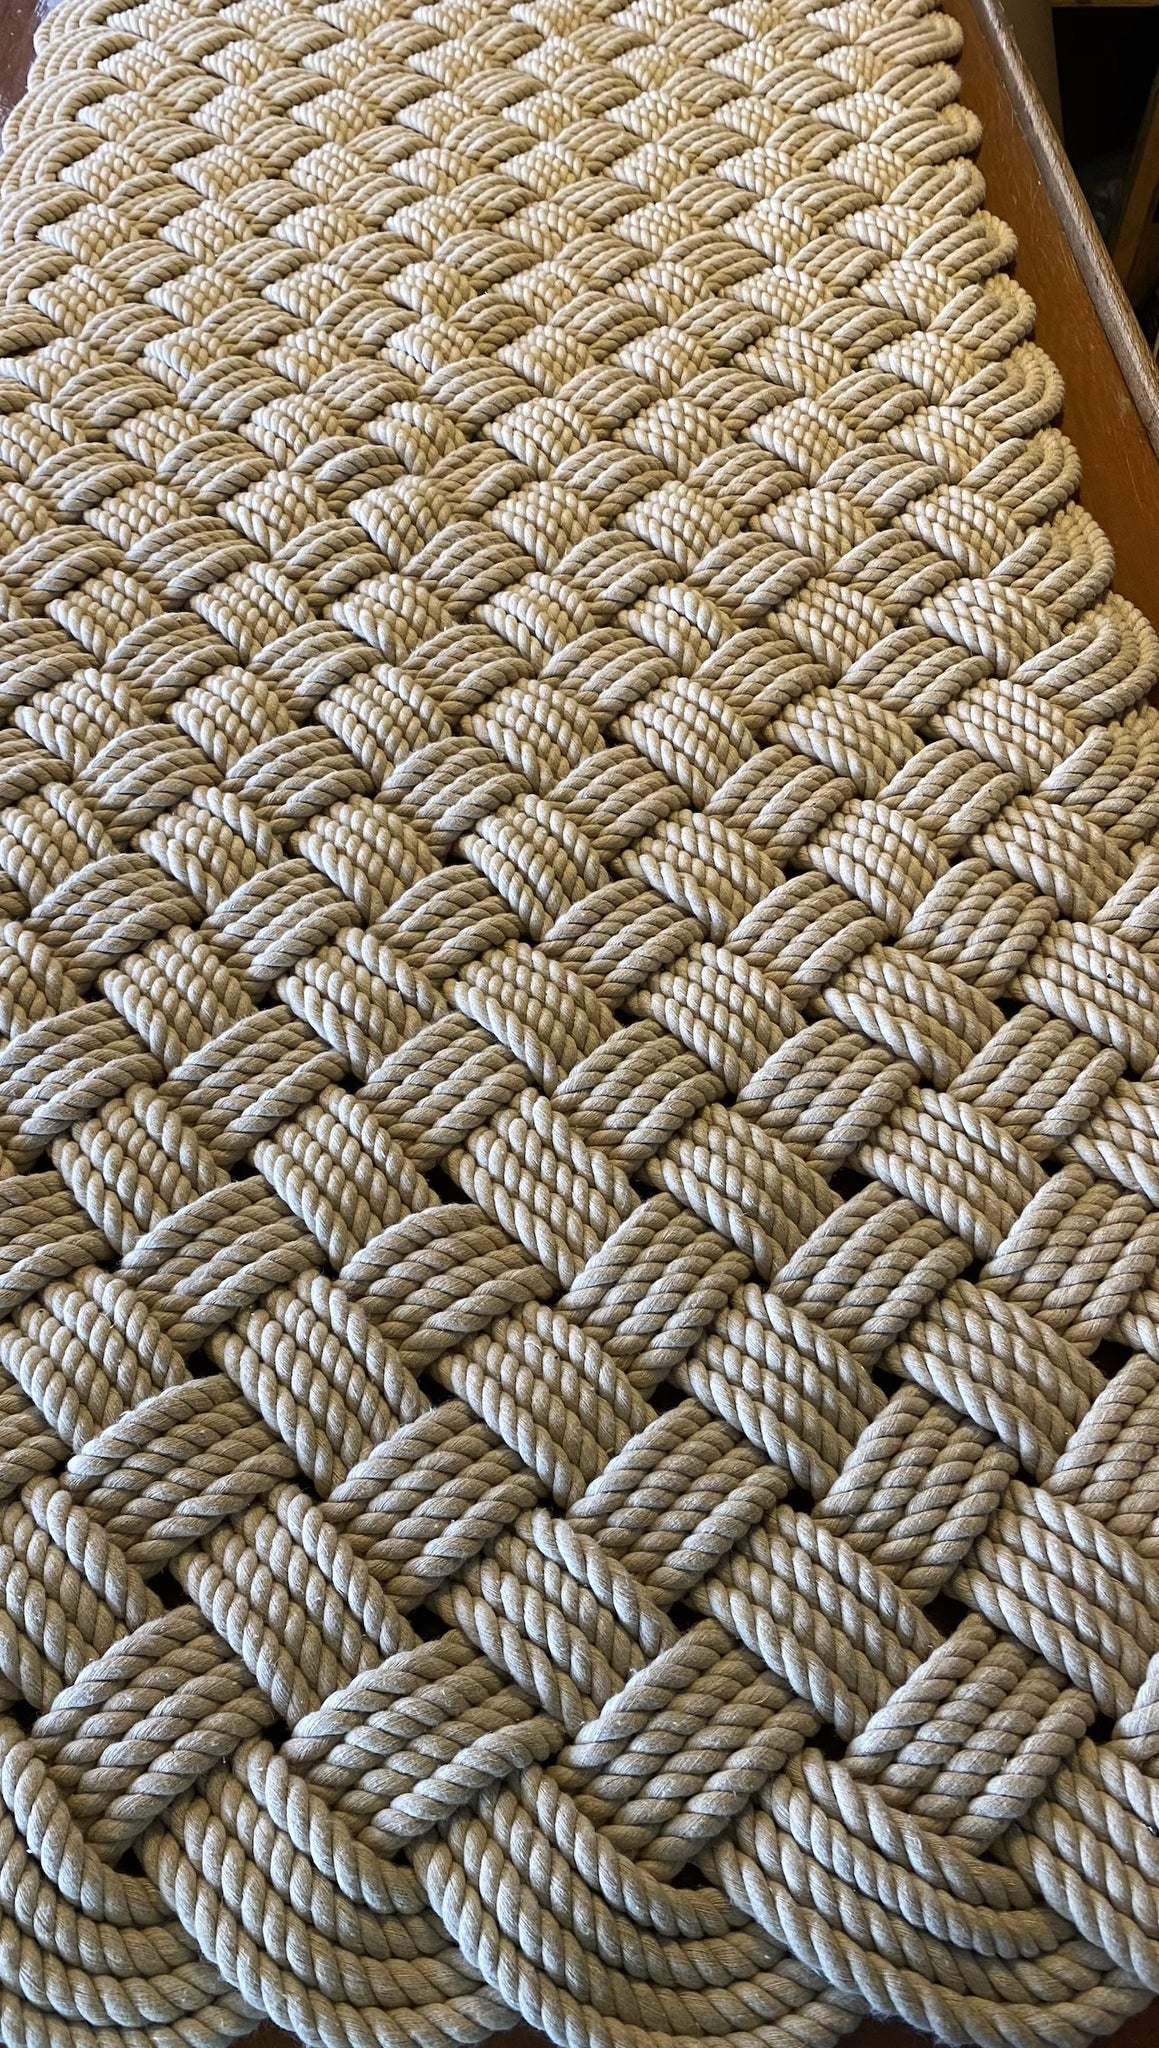 Cotton Mat